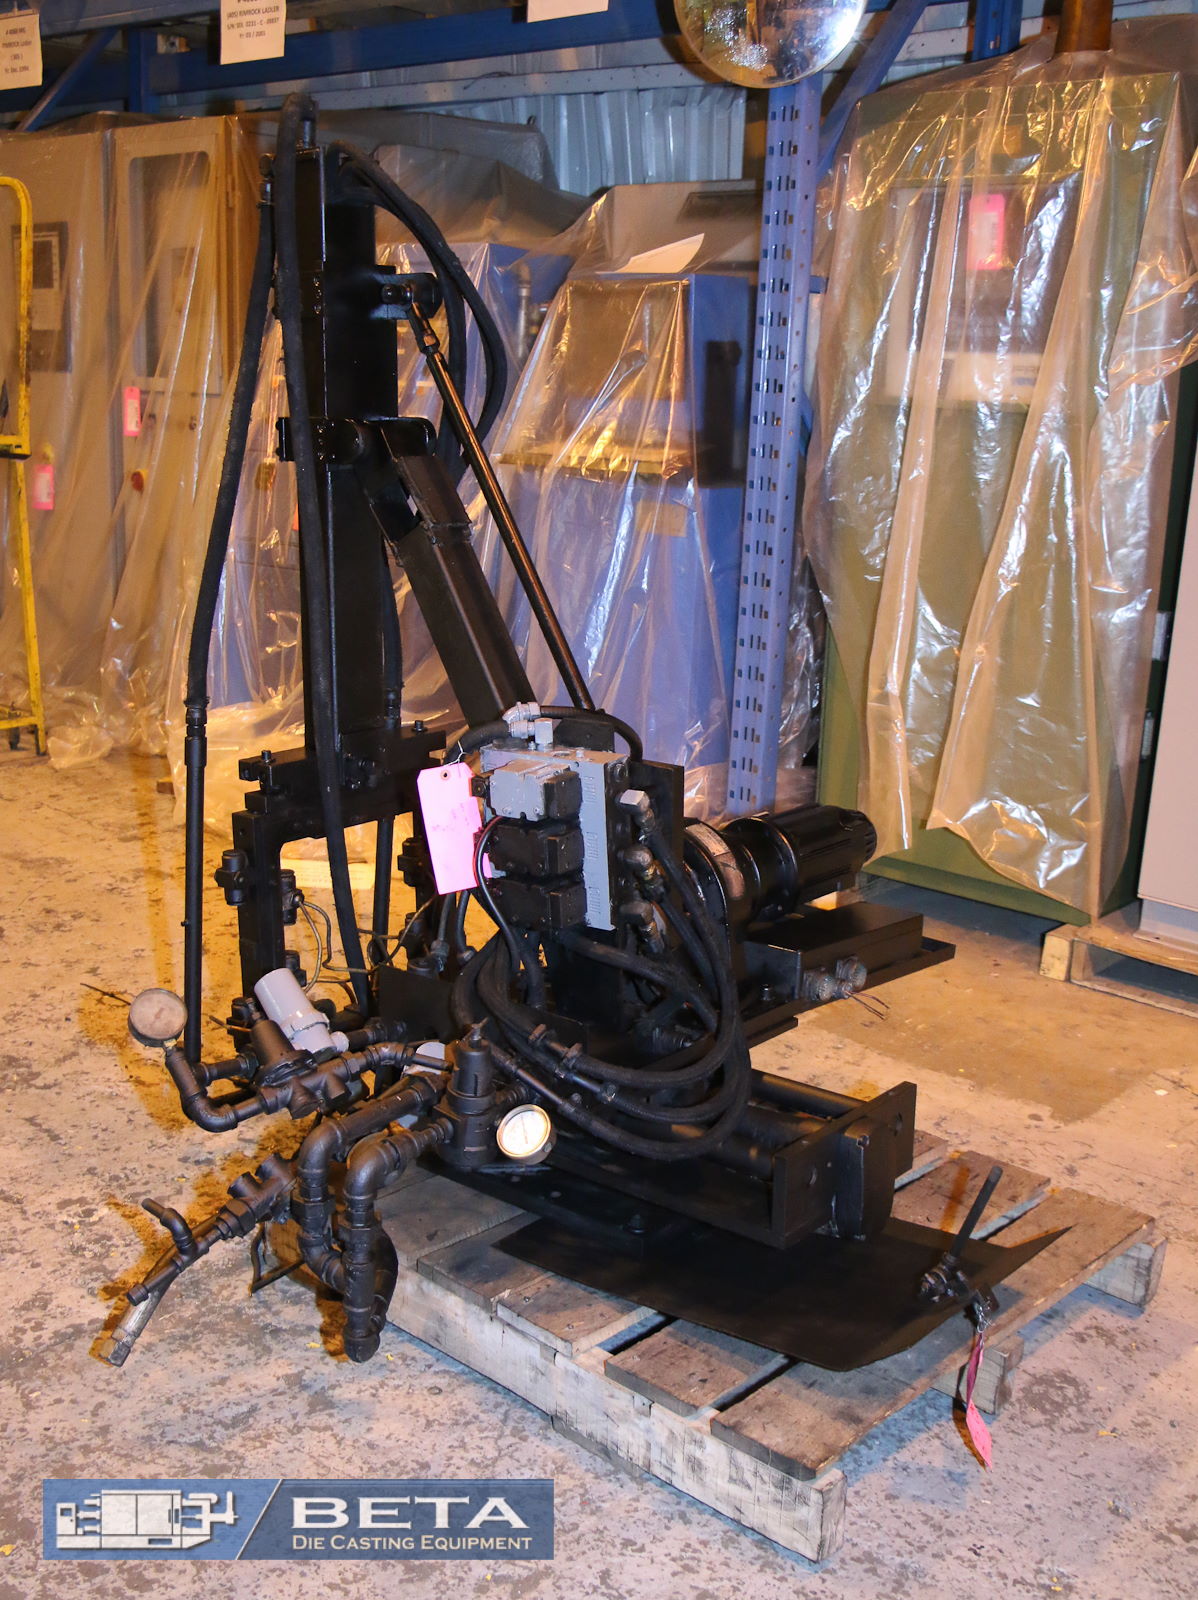 Image of Pulverizador Advance usado para fundición a presión